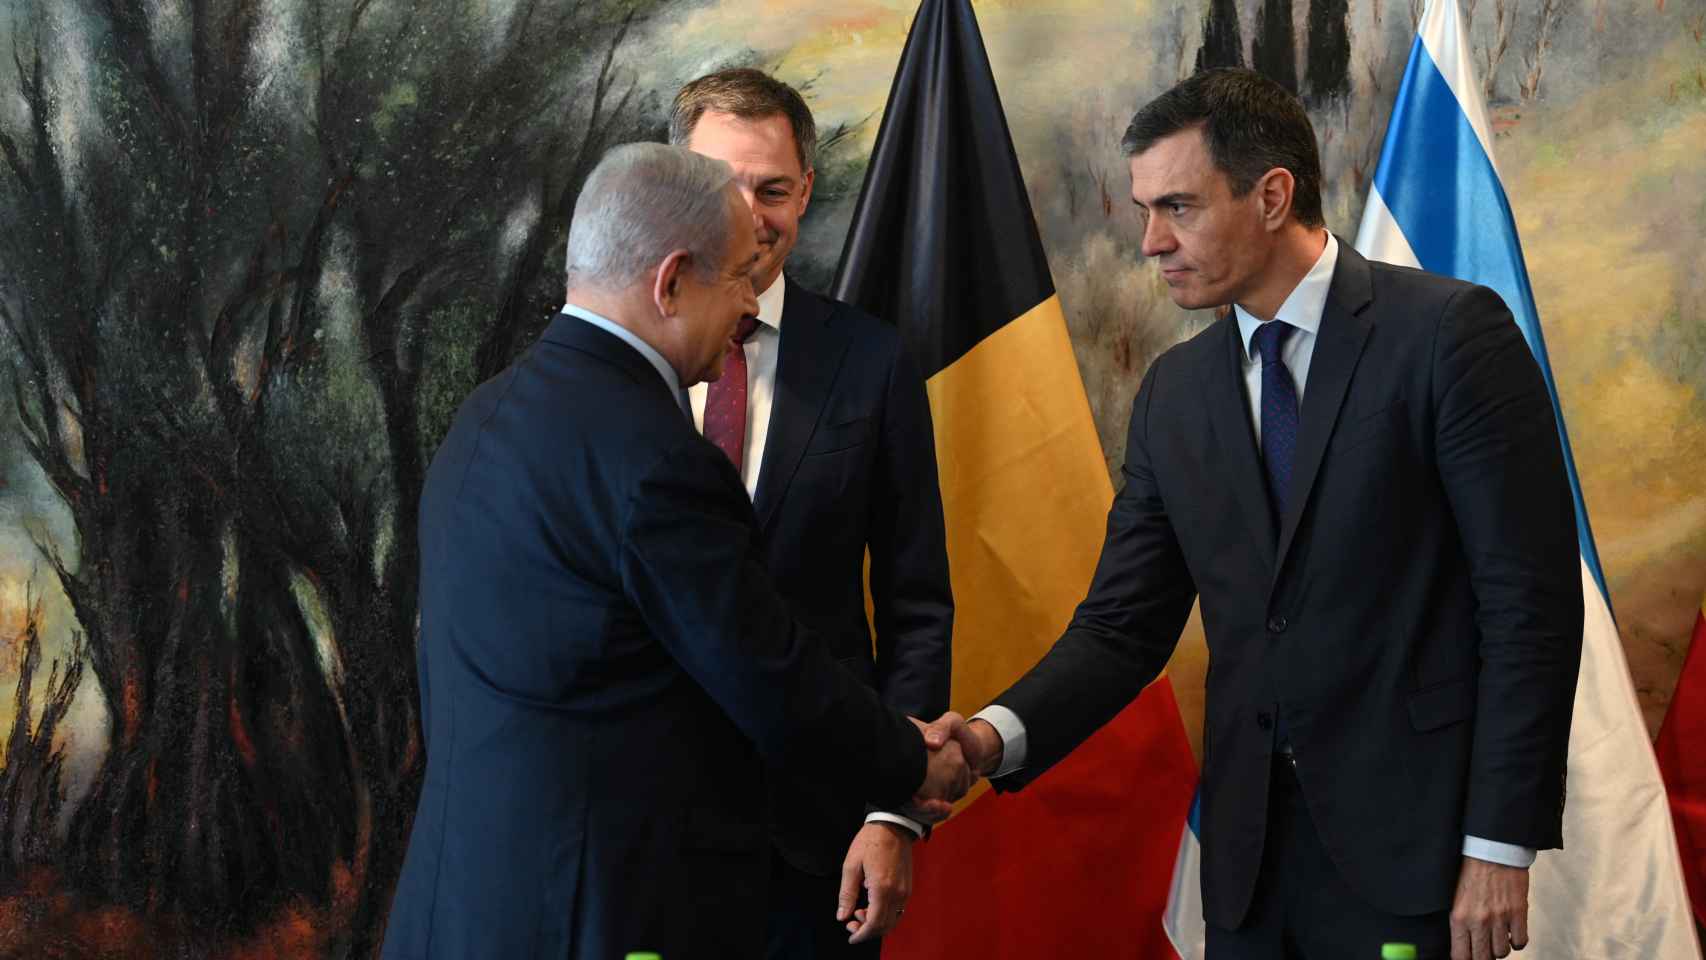 El saludo entre Netanyahu y Sánchez antes de la reunión.